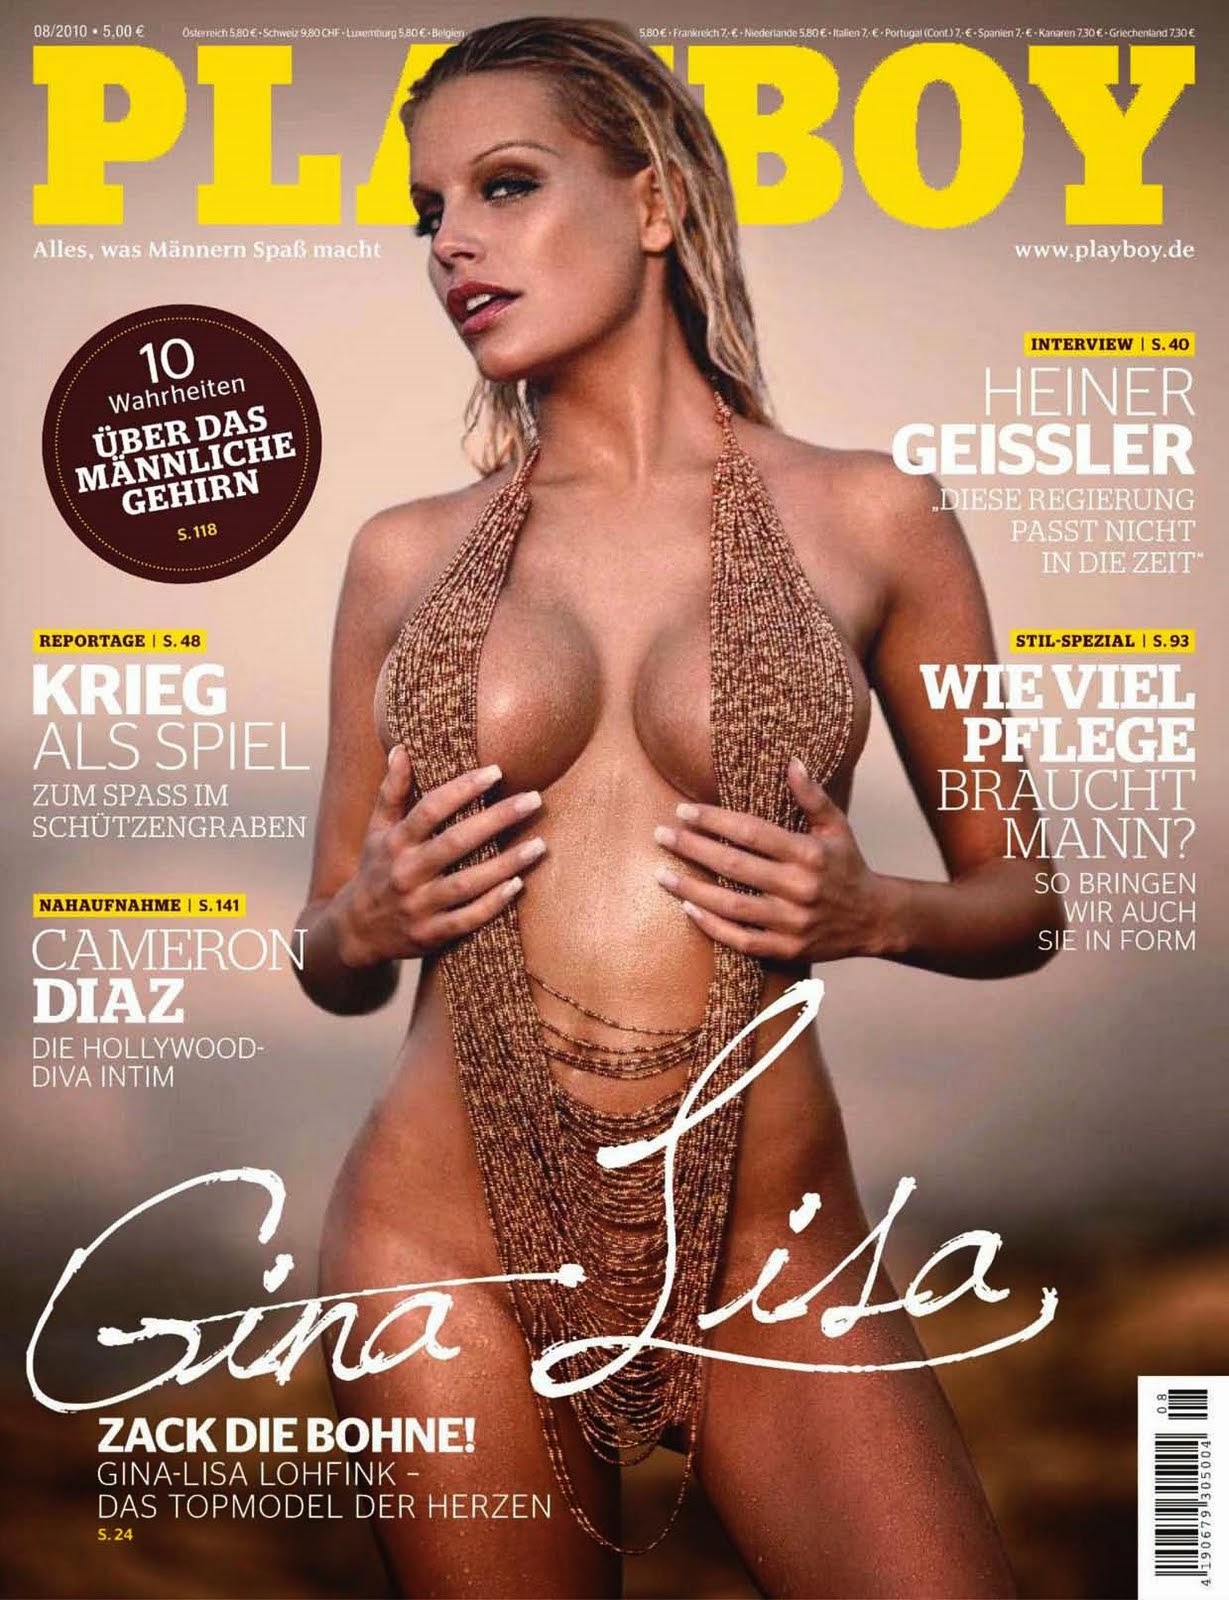 sexy Gina lisa lohfink